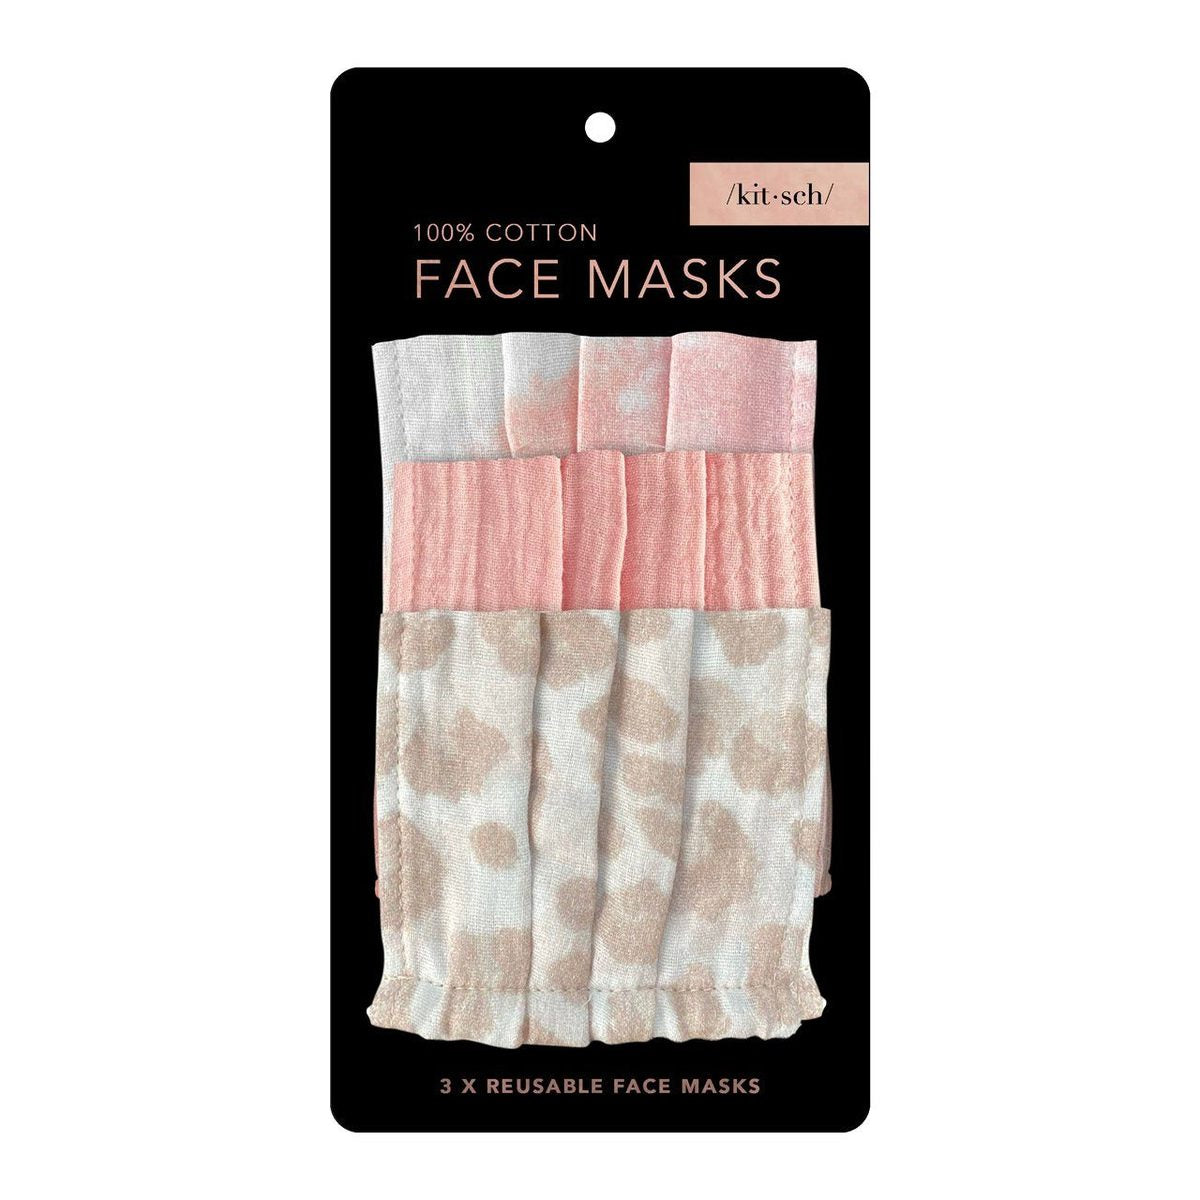 Kitsch face masks